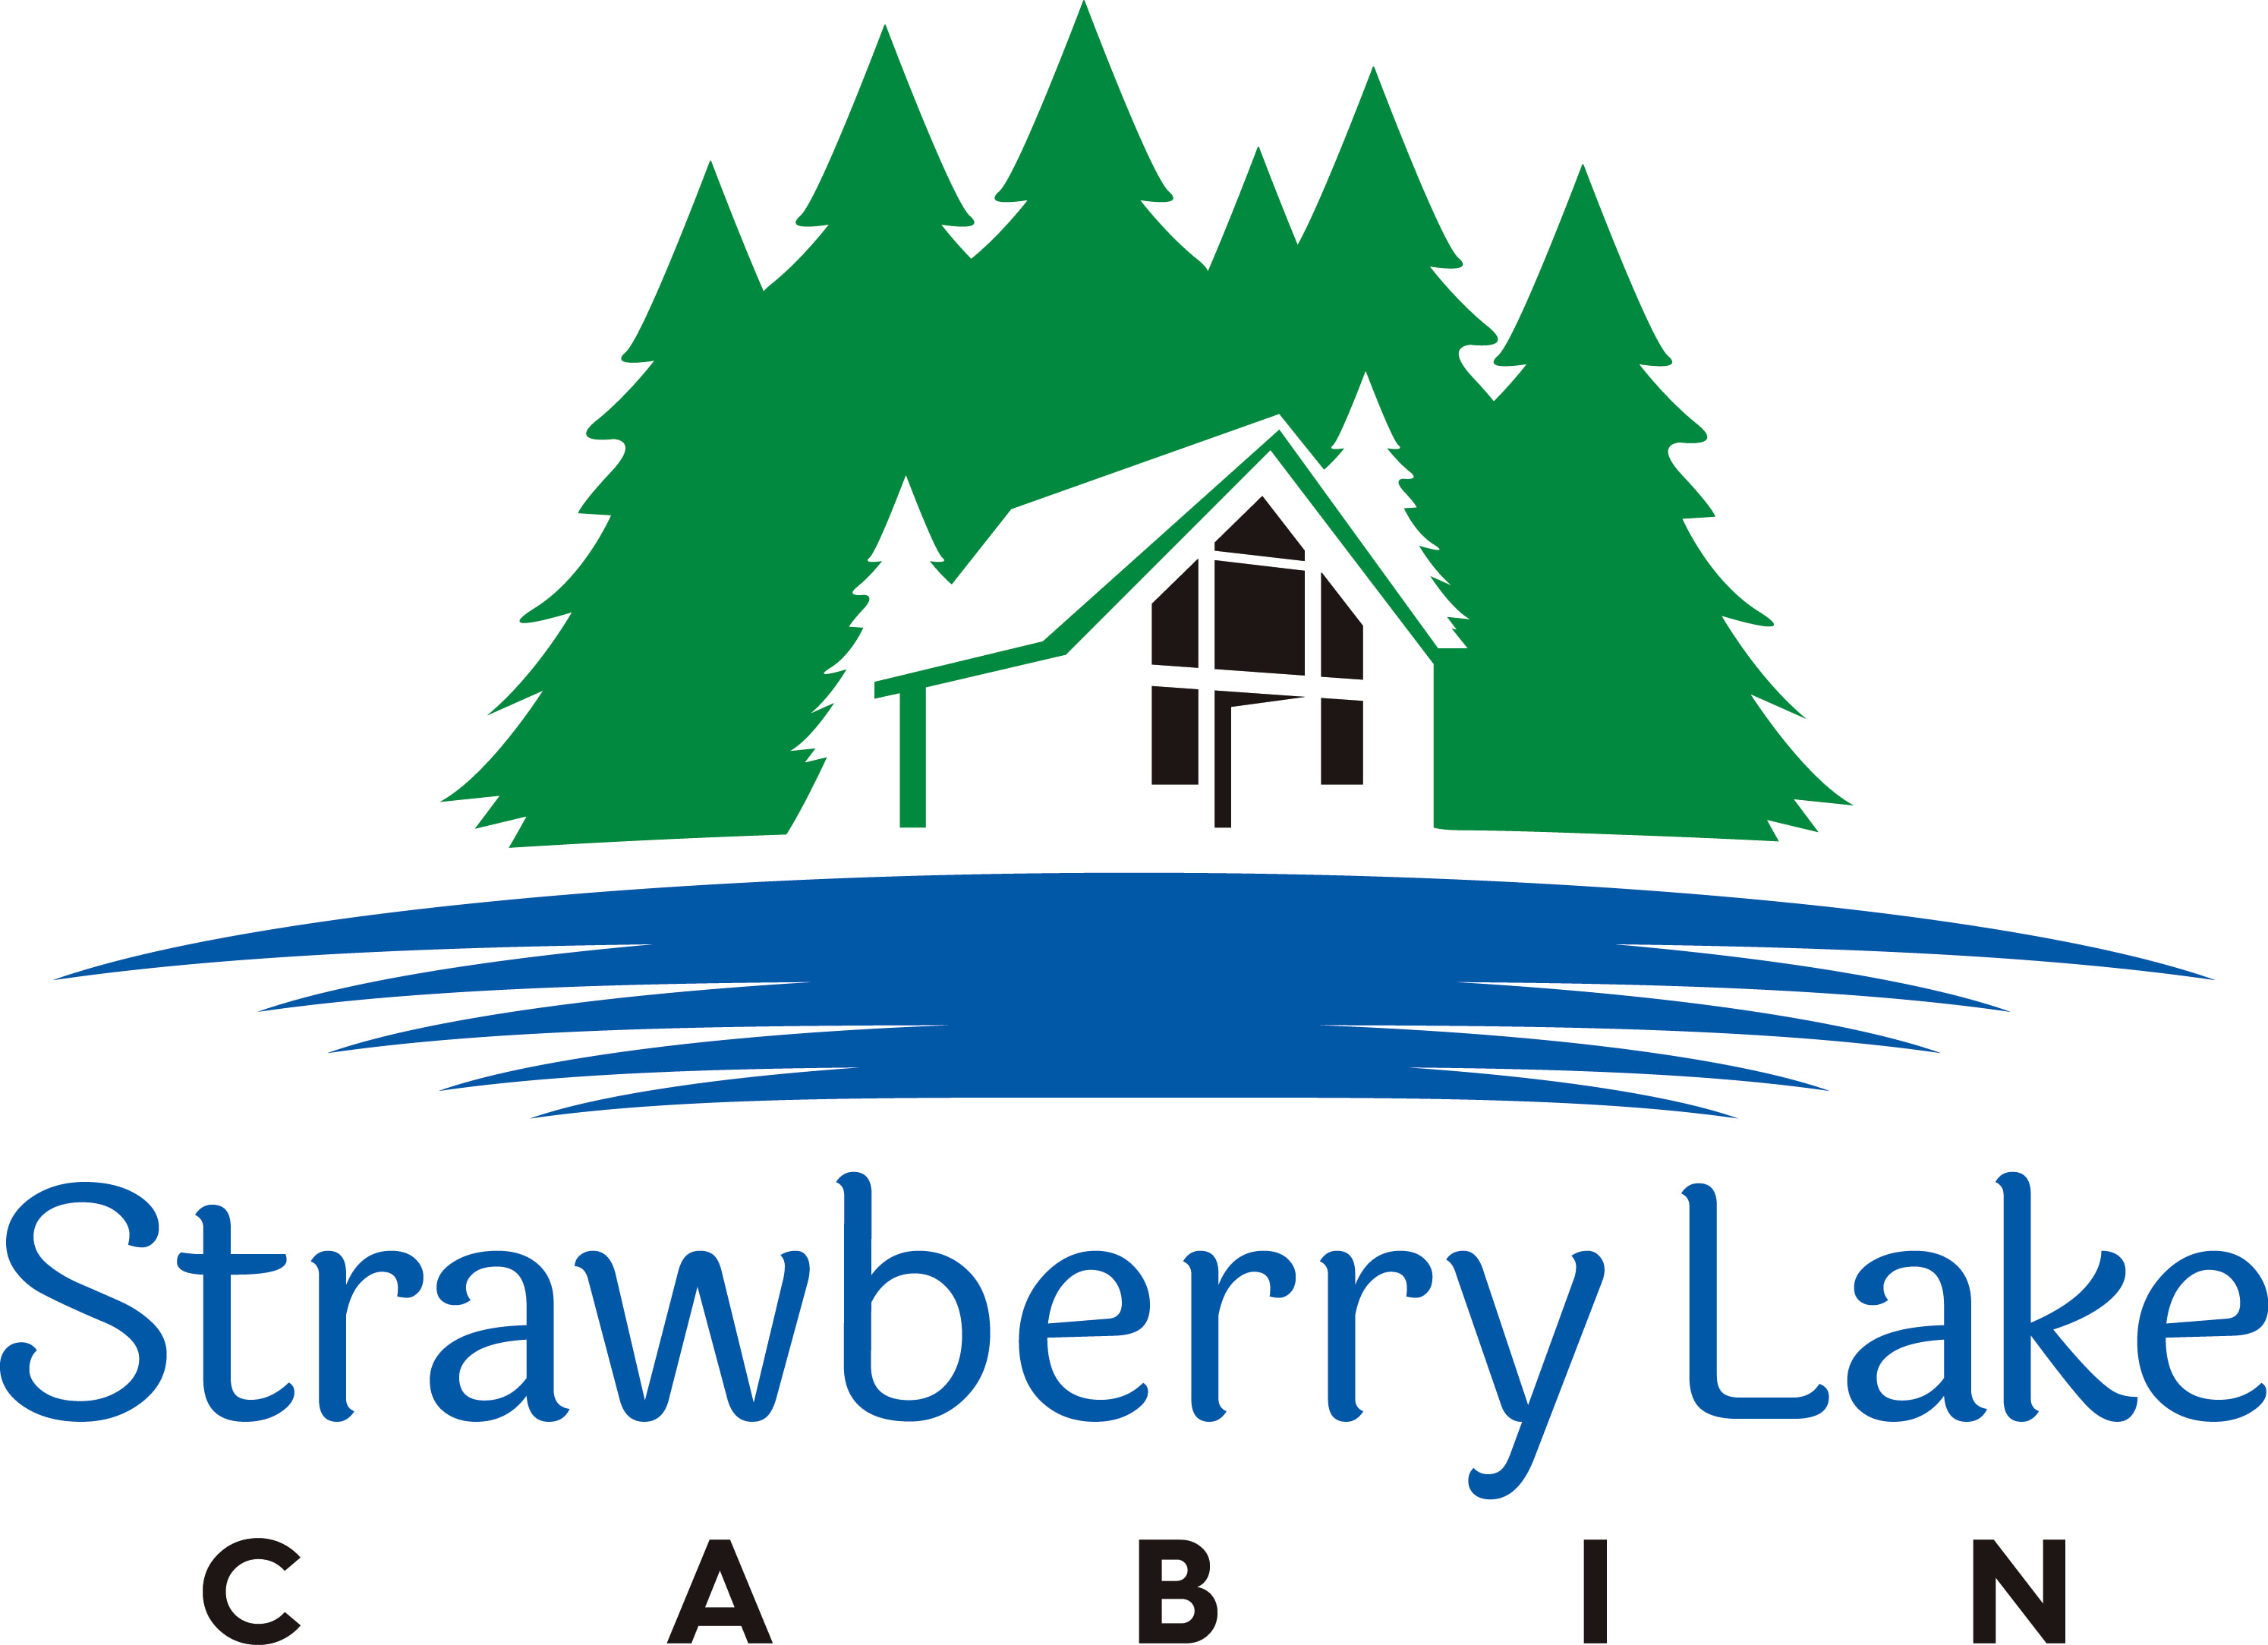 Strawberry Lake Cabin in N.W. Minnesota